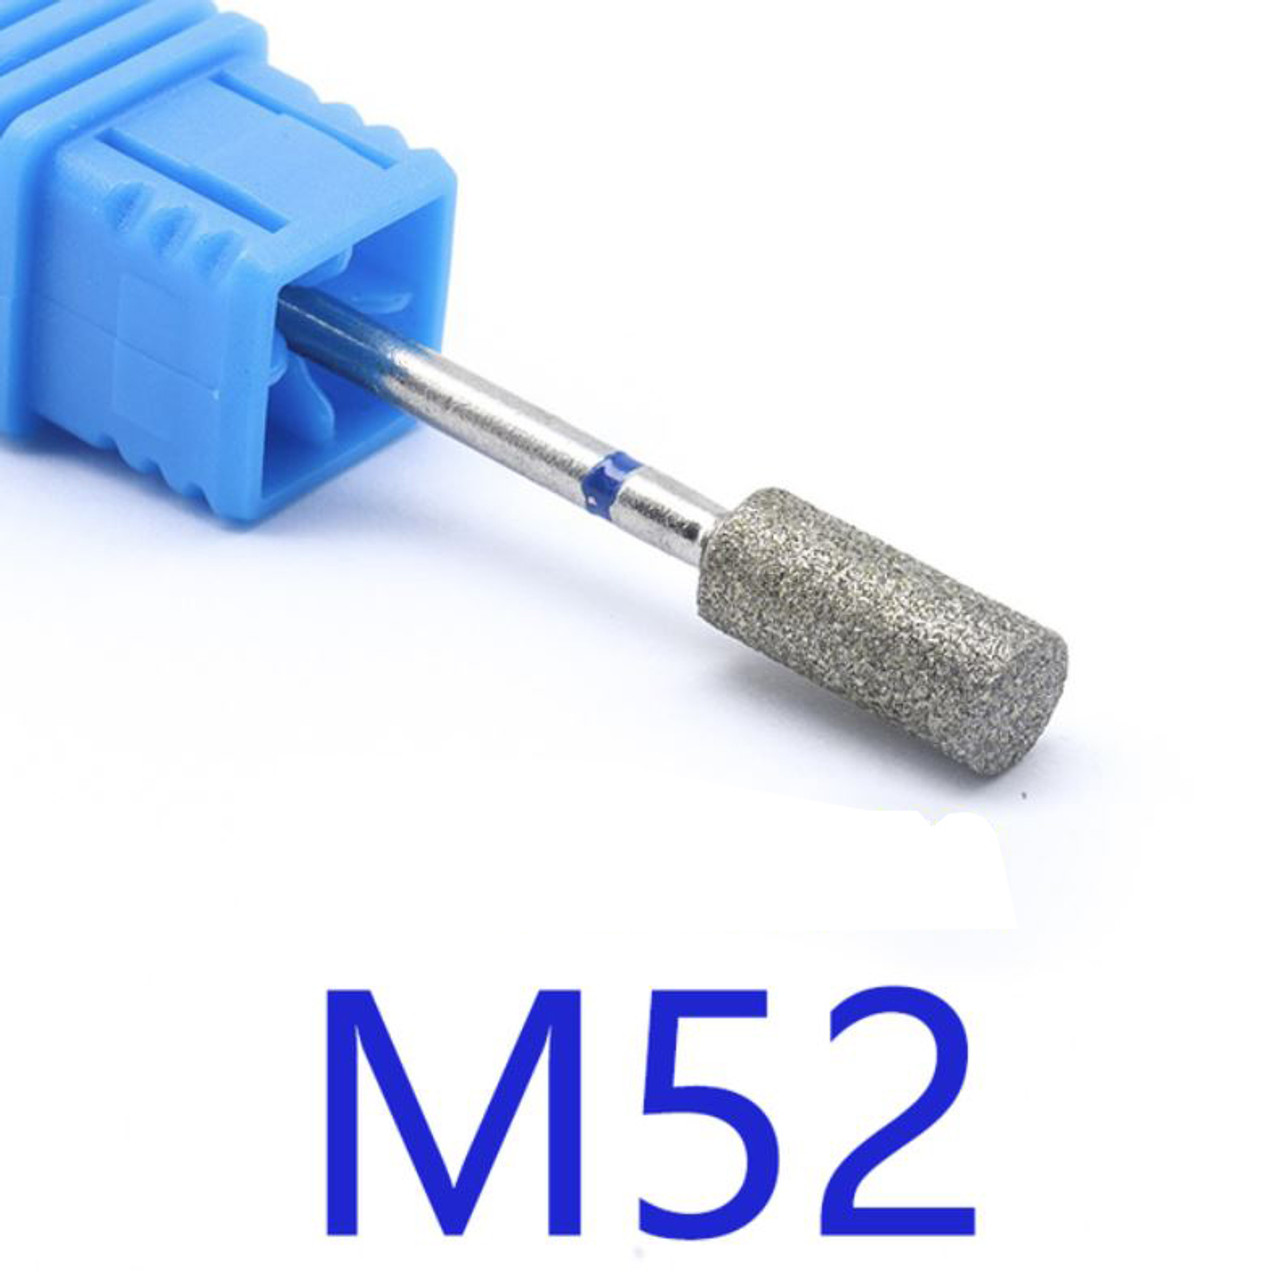 NDi beauty Diamond Drill Bit - 3/32 shank (MEDIUM) - M52